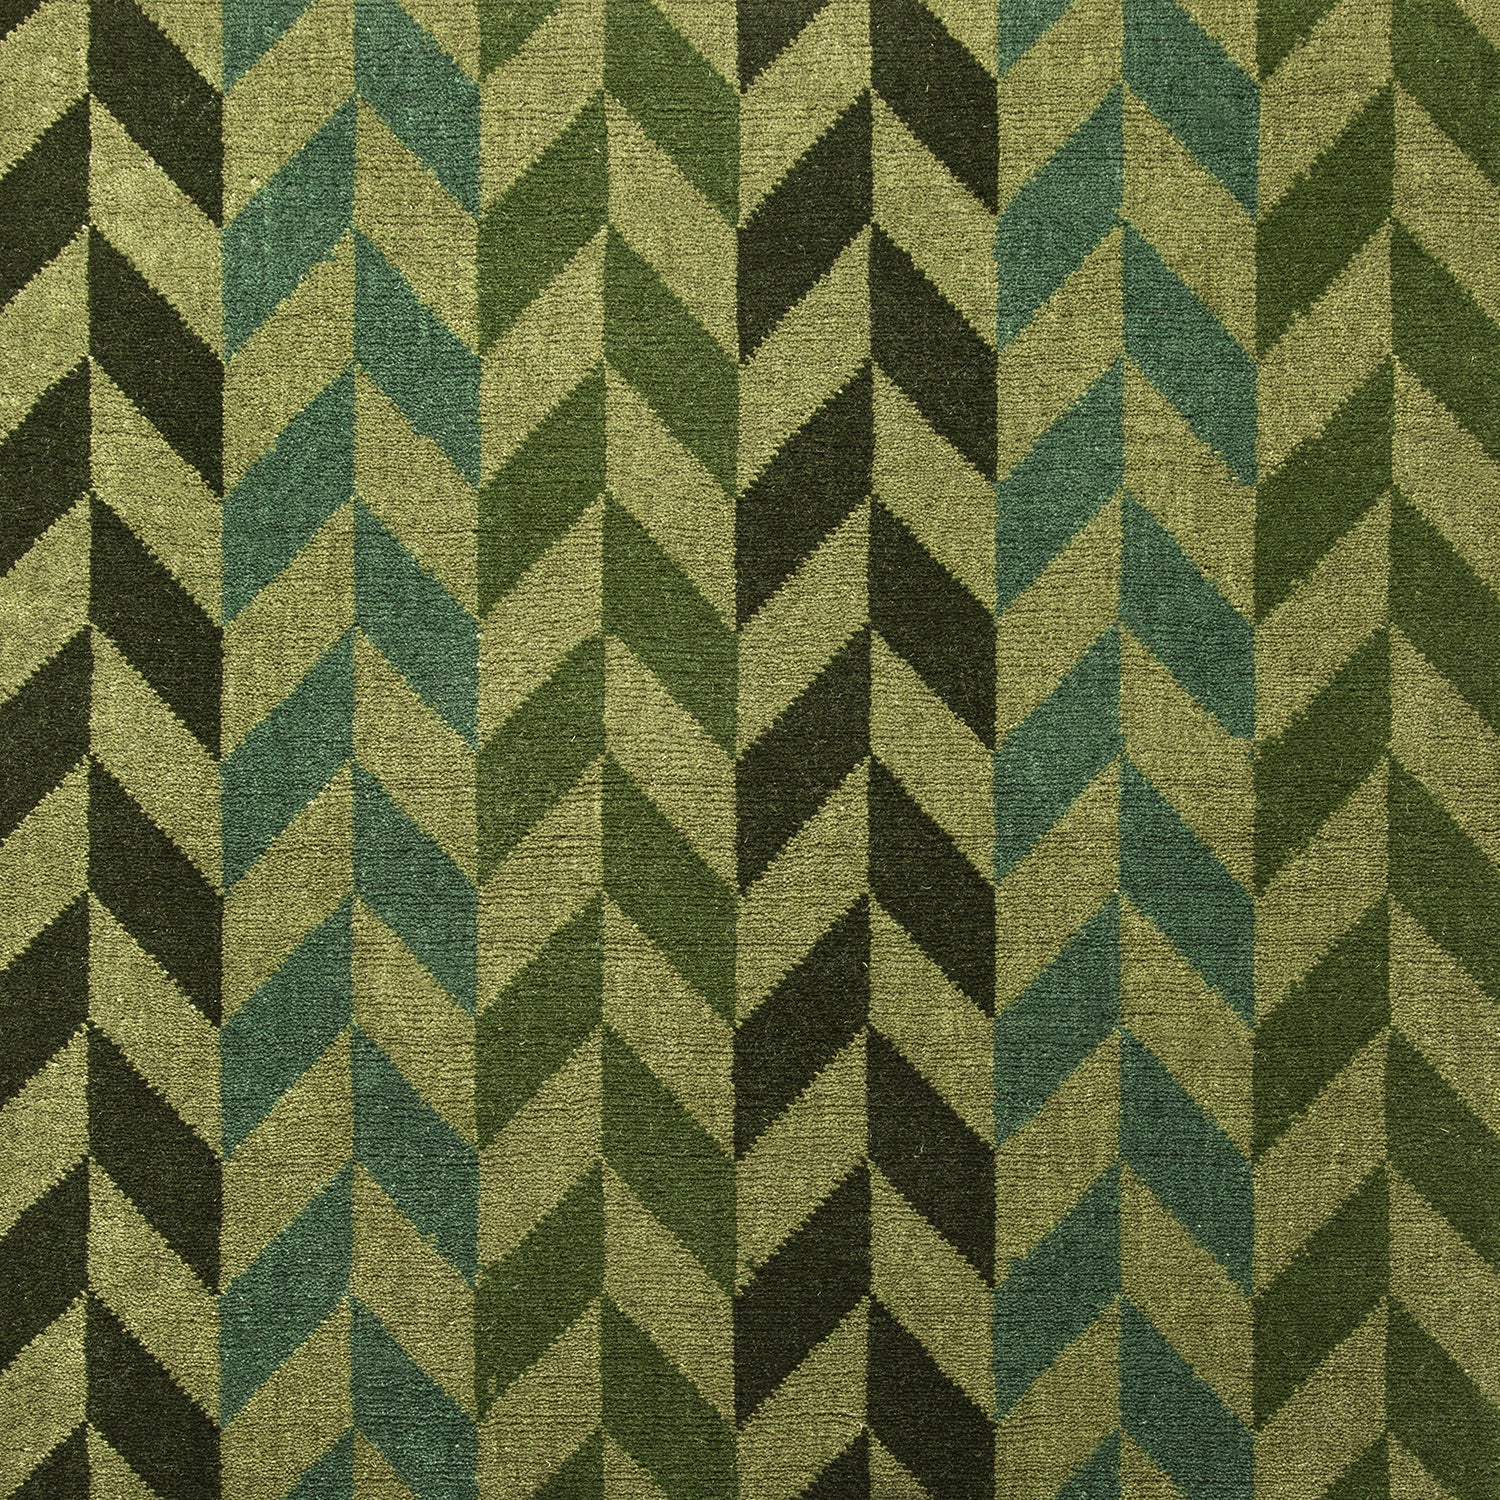 Wool-silk broadloom carpet swatch in a chevron stripe pattern in shades of green on an olive field.